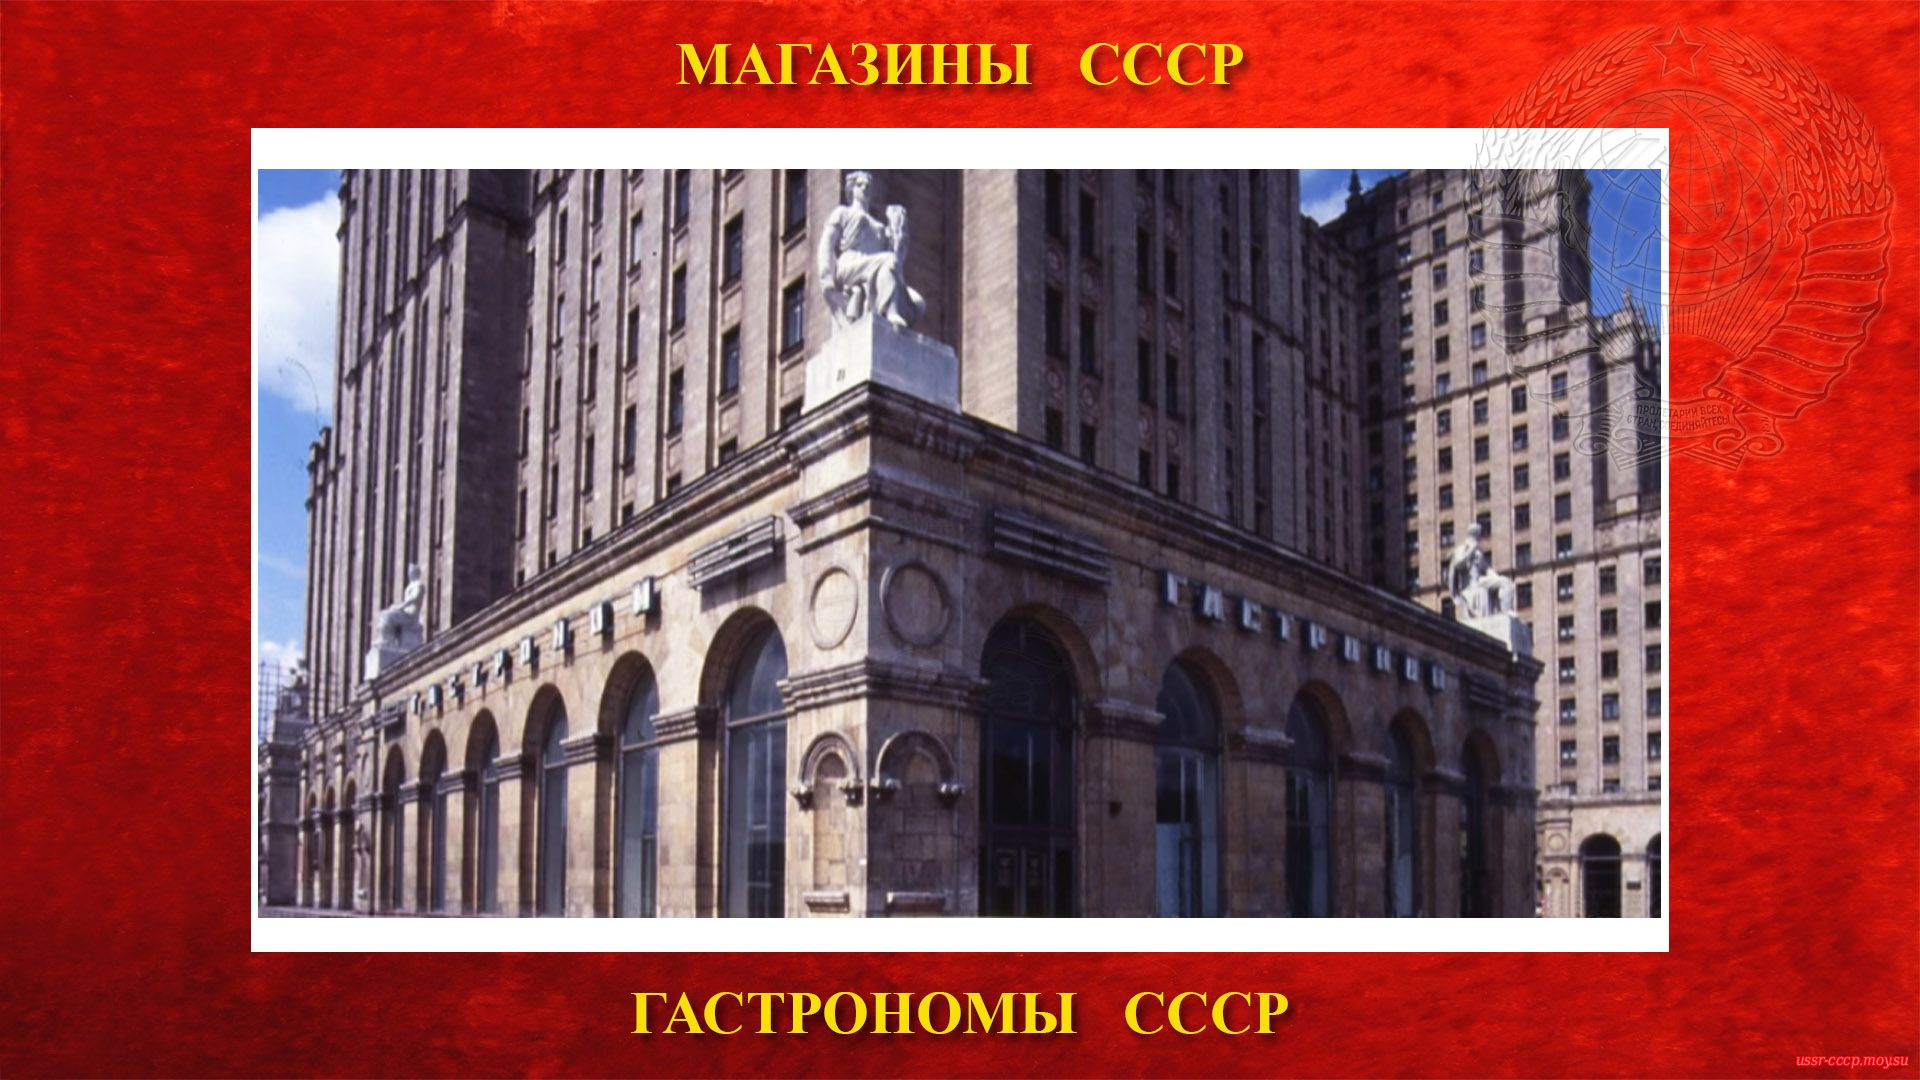 Гастроном № 15 — На площади Восстания в Москве (повествование)